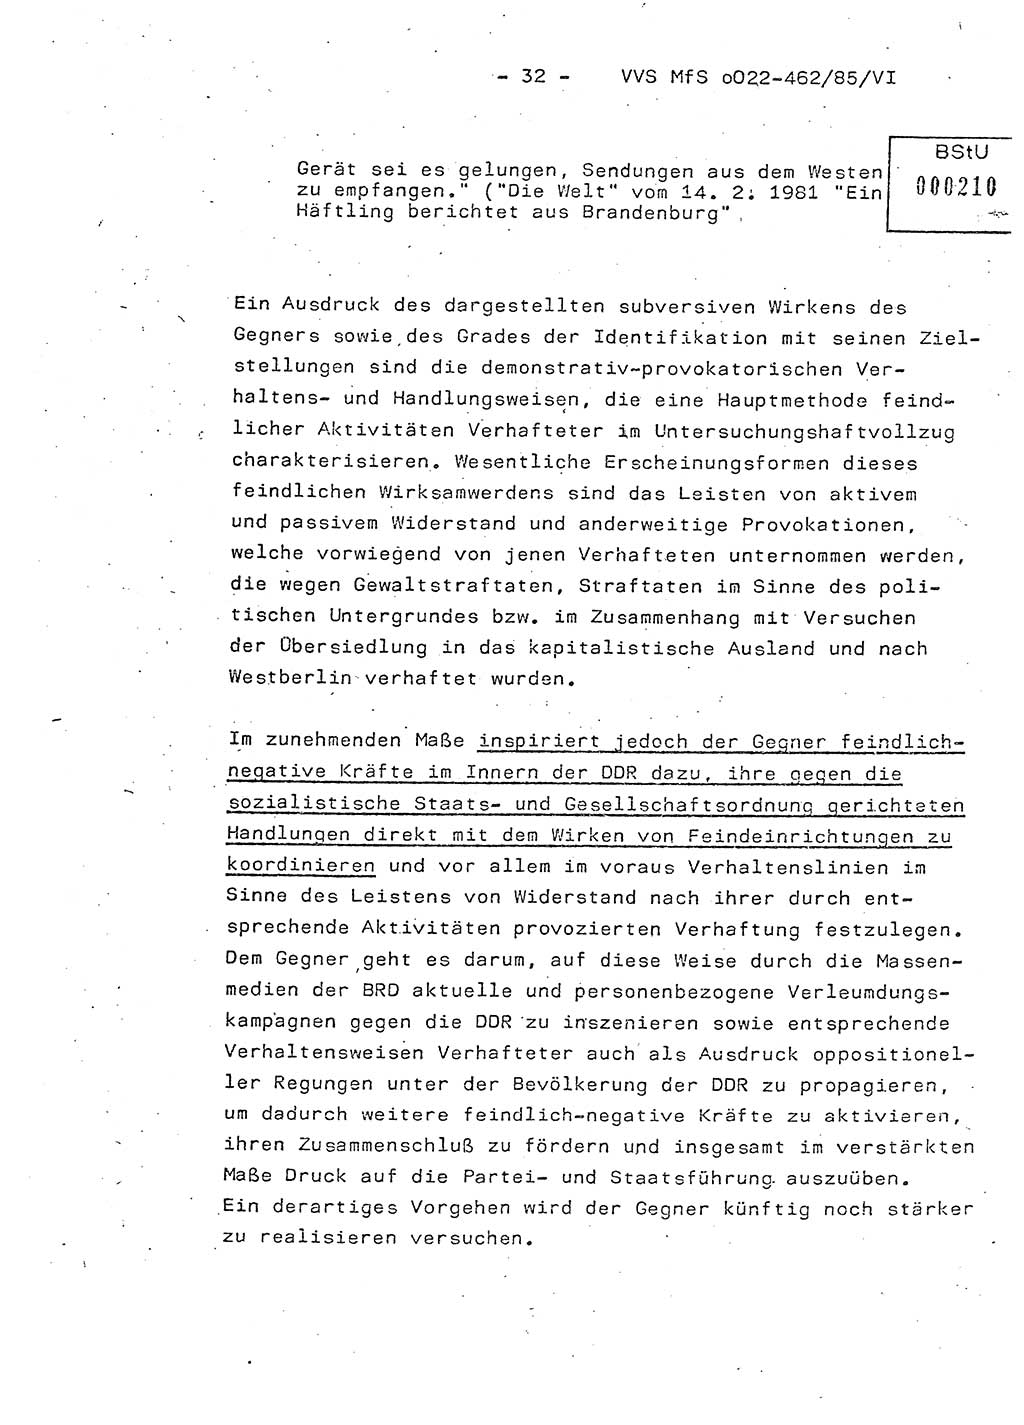 Der Untersuchungshaftvollzug im MfS, Schulungsmaterial Teil Ⅵ, Ministerium für Staatssicherheit [Deutsche Demokratische Republik (DDR)], Abteilung (Abt.) ⅩⅣ, Vertrauliche Verschlußsache (VVS) o022-462/85/Ⅵ, Berlin 1985, Seite 32 (Sch.-Mat. Ⅵ MfS DDR Abt. ⅩⅣ VVS o022-462/85/Ⅵ 1985, S. 32)